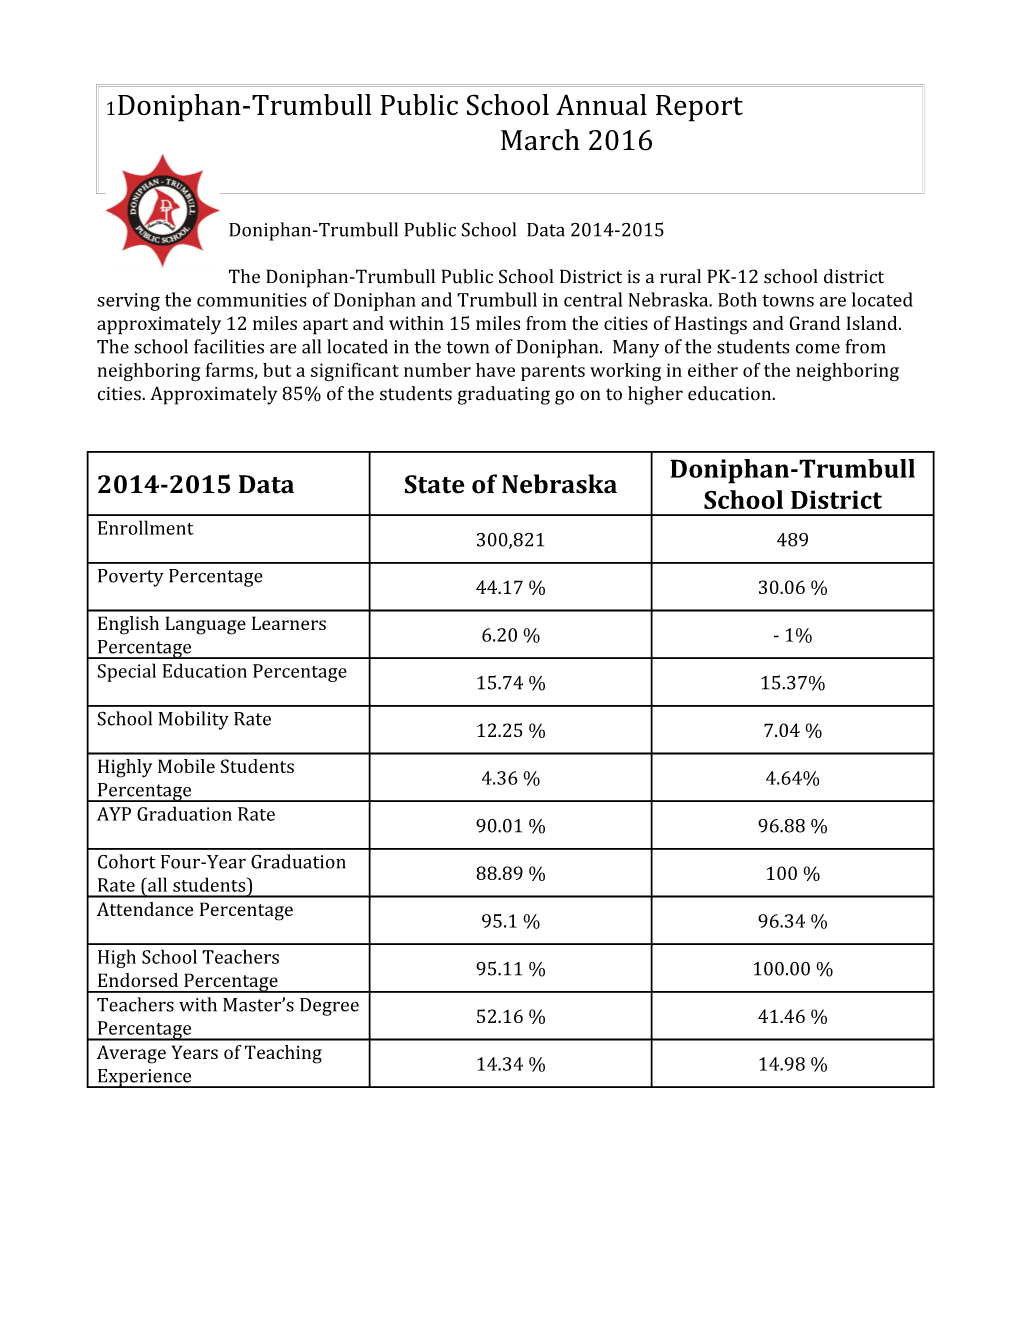 Doniphan-Trumbull Public School Data 2014-2015